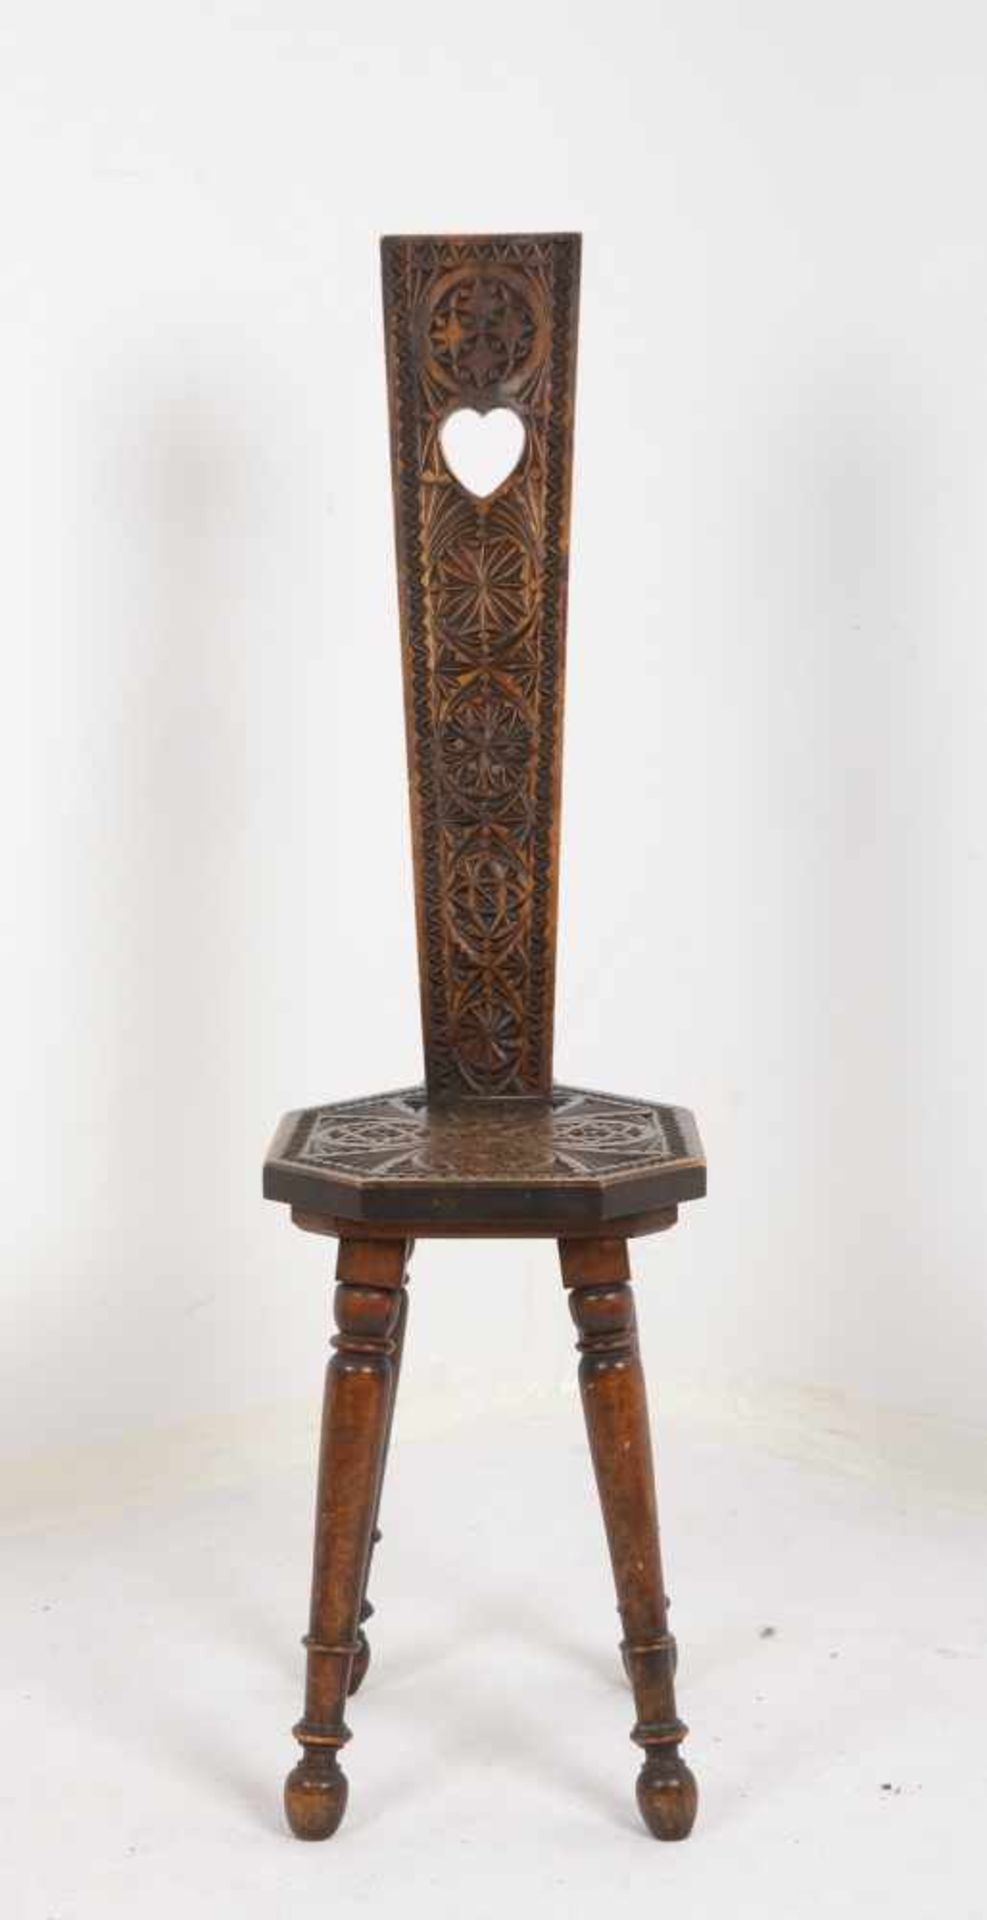 Stuhl, Holz mit Kerbschnitzerei, mit hoher schmaler Rückenlehne; Lehnenhöhe 107 cm - Bild 2 aus 2